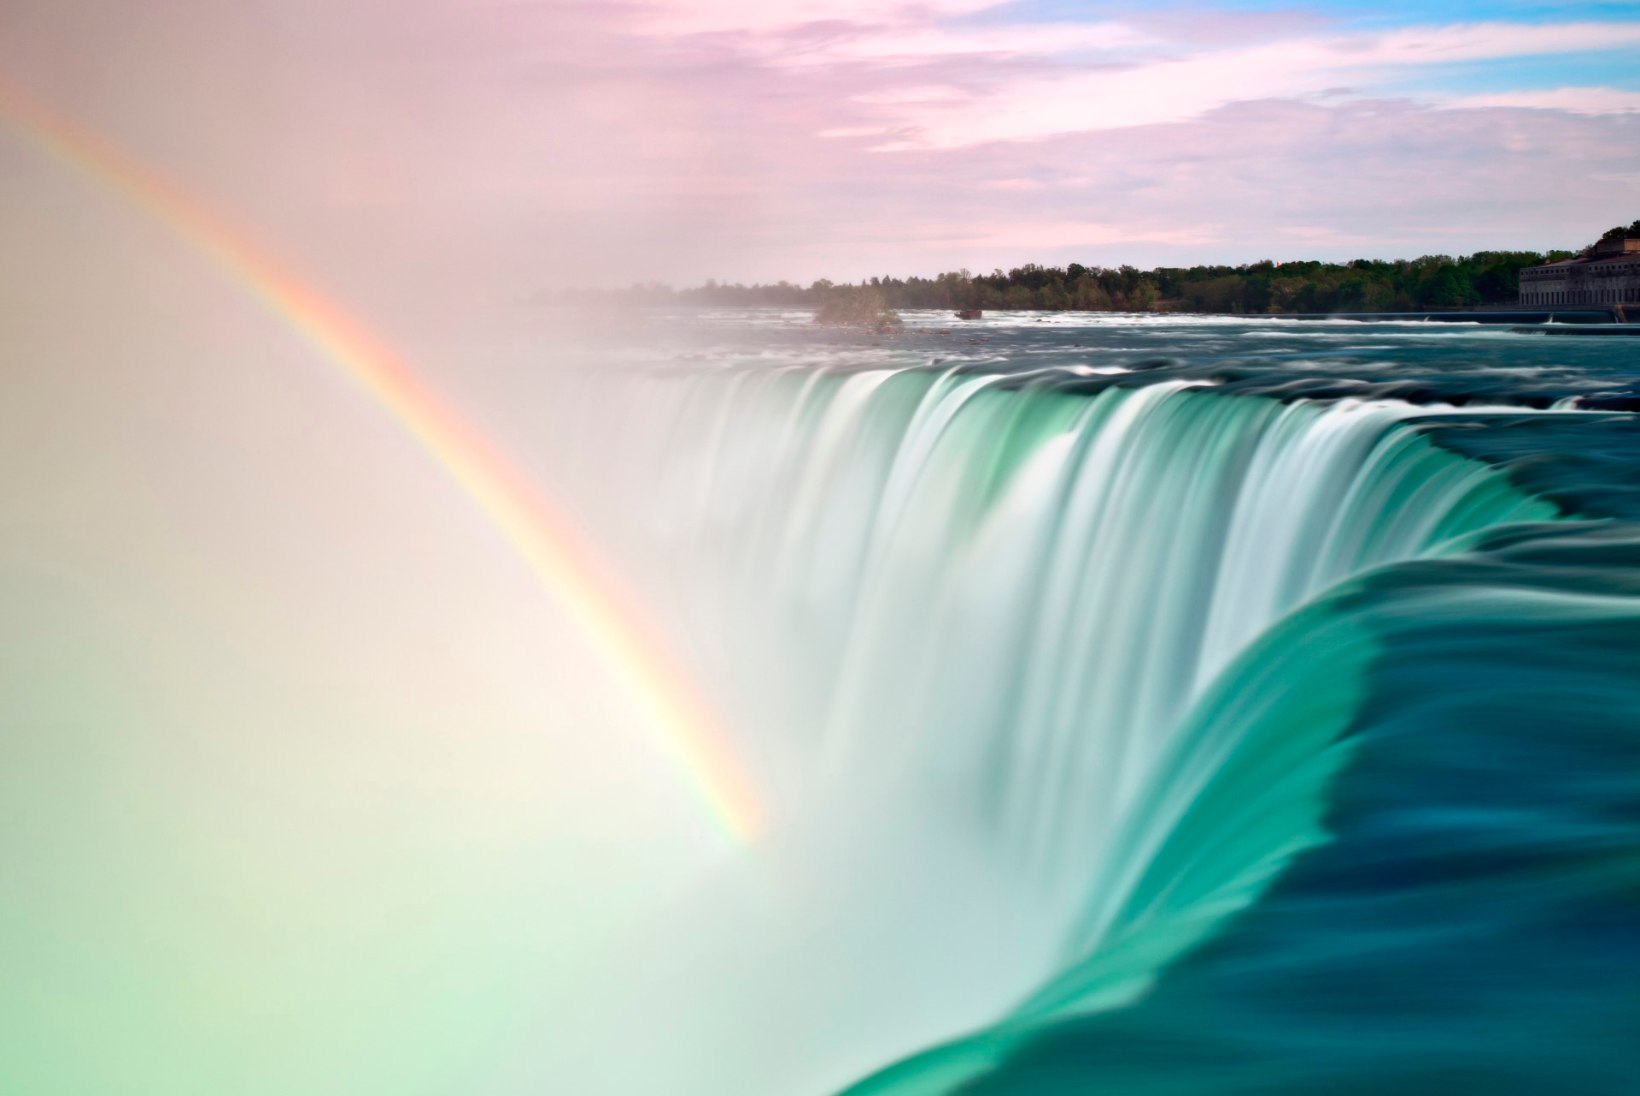 ÕHTULEHE VIDEO | 1 küsimus võrkpallikoondisele: benji-hüpe Niagara joalt või langevarjuhüpe Teletornist?